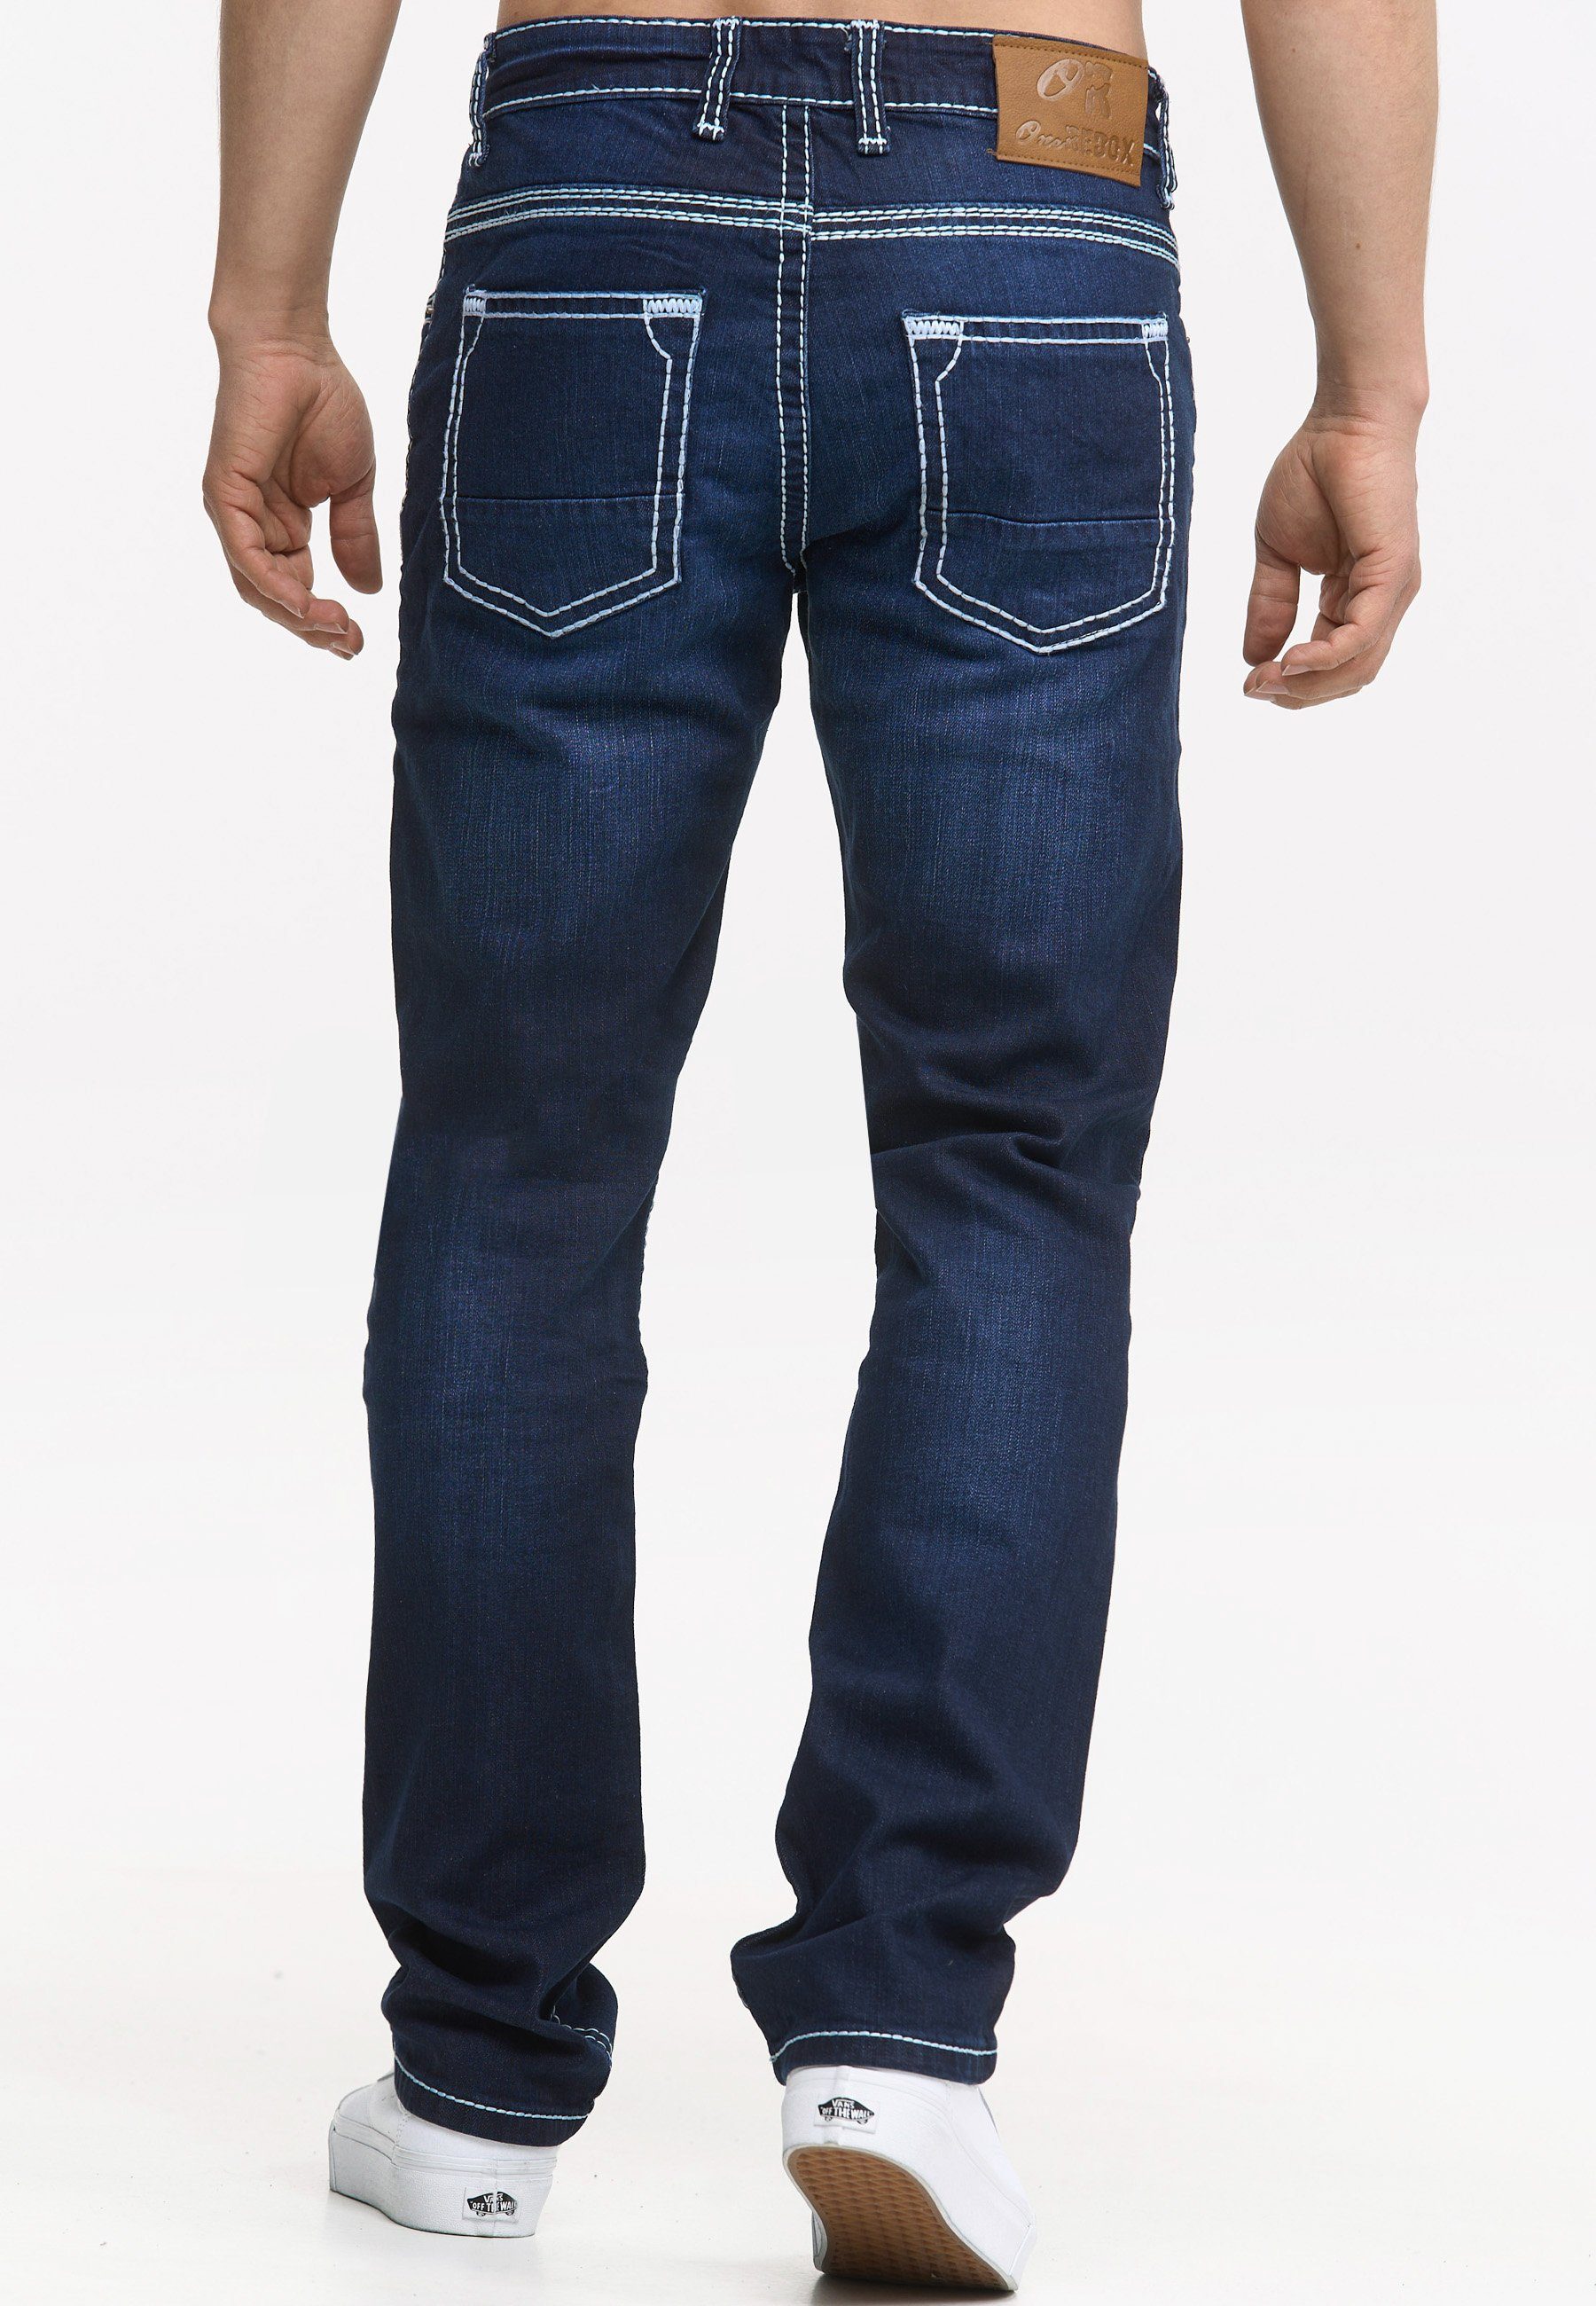 905 Fit Regular-fit-Jeans Code47 Regular dark blue Pocket Code47 Five Bootcut Hose Jeans Denim Männer Herren